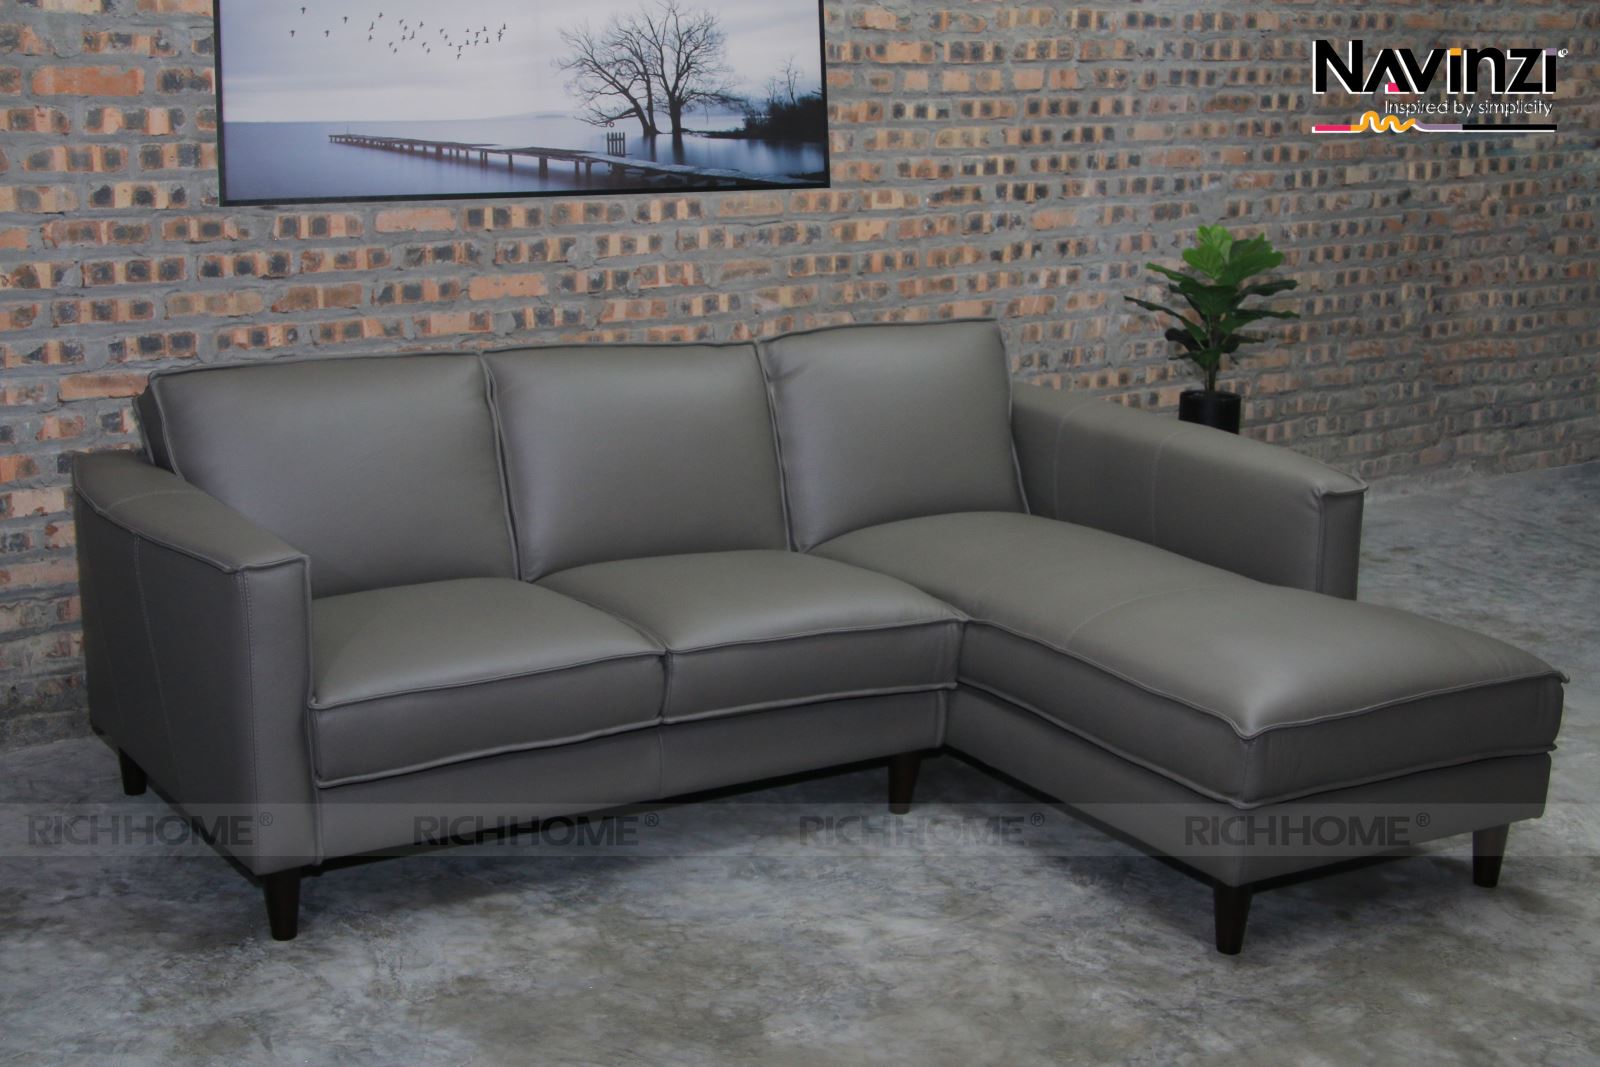 Tổng hợp các mẫu sofa đẹp 2020 dành cho văn phòng - Ảnh 4